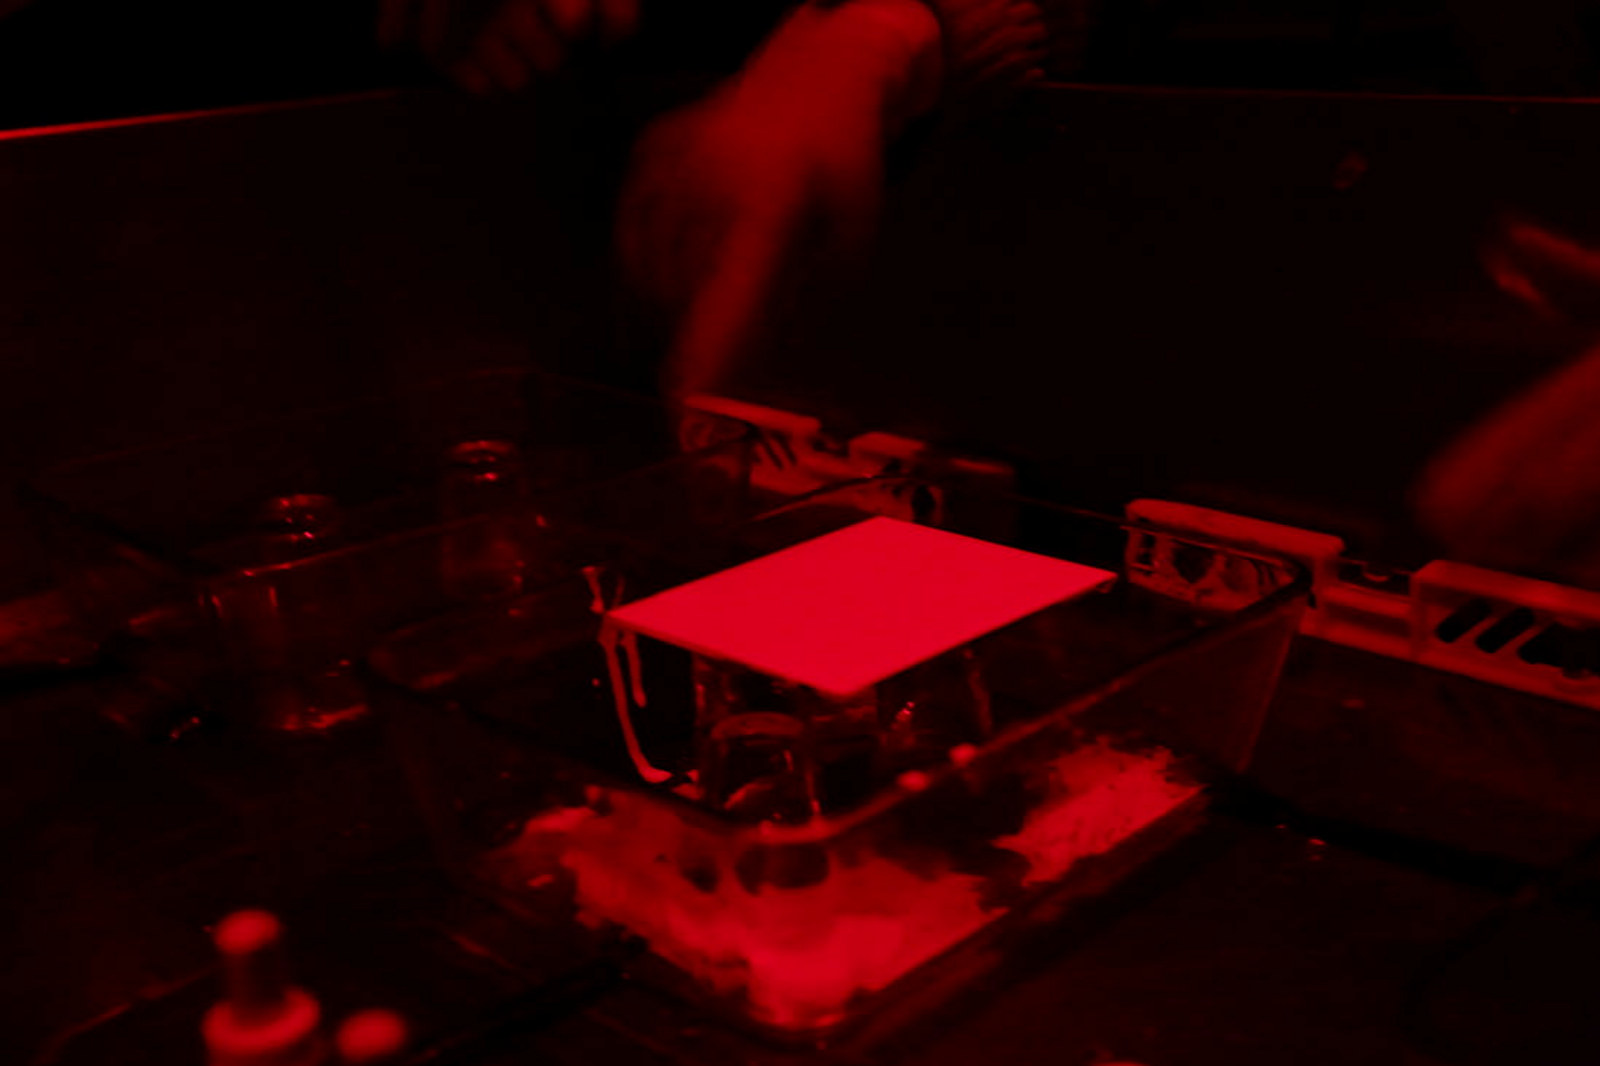 Closeup of emulsion under red light.